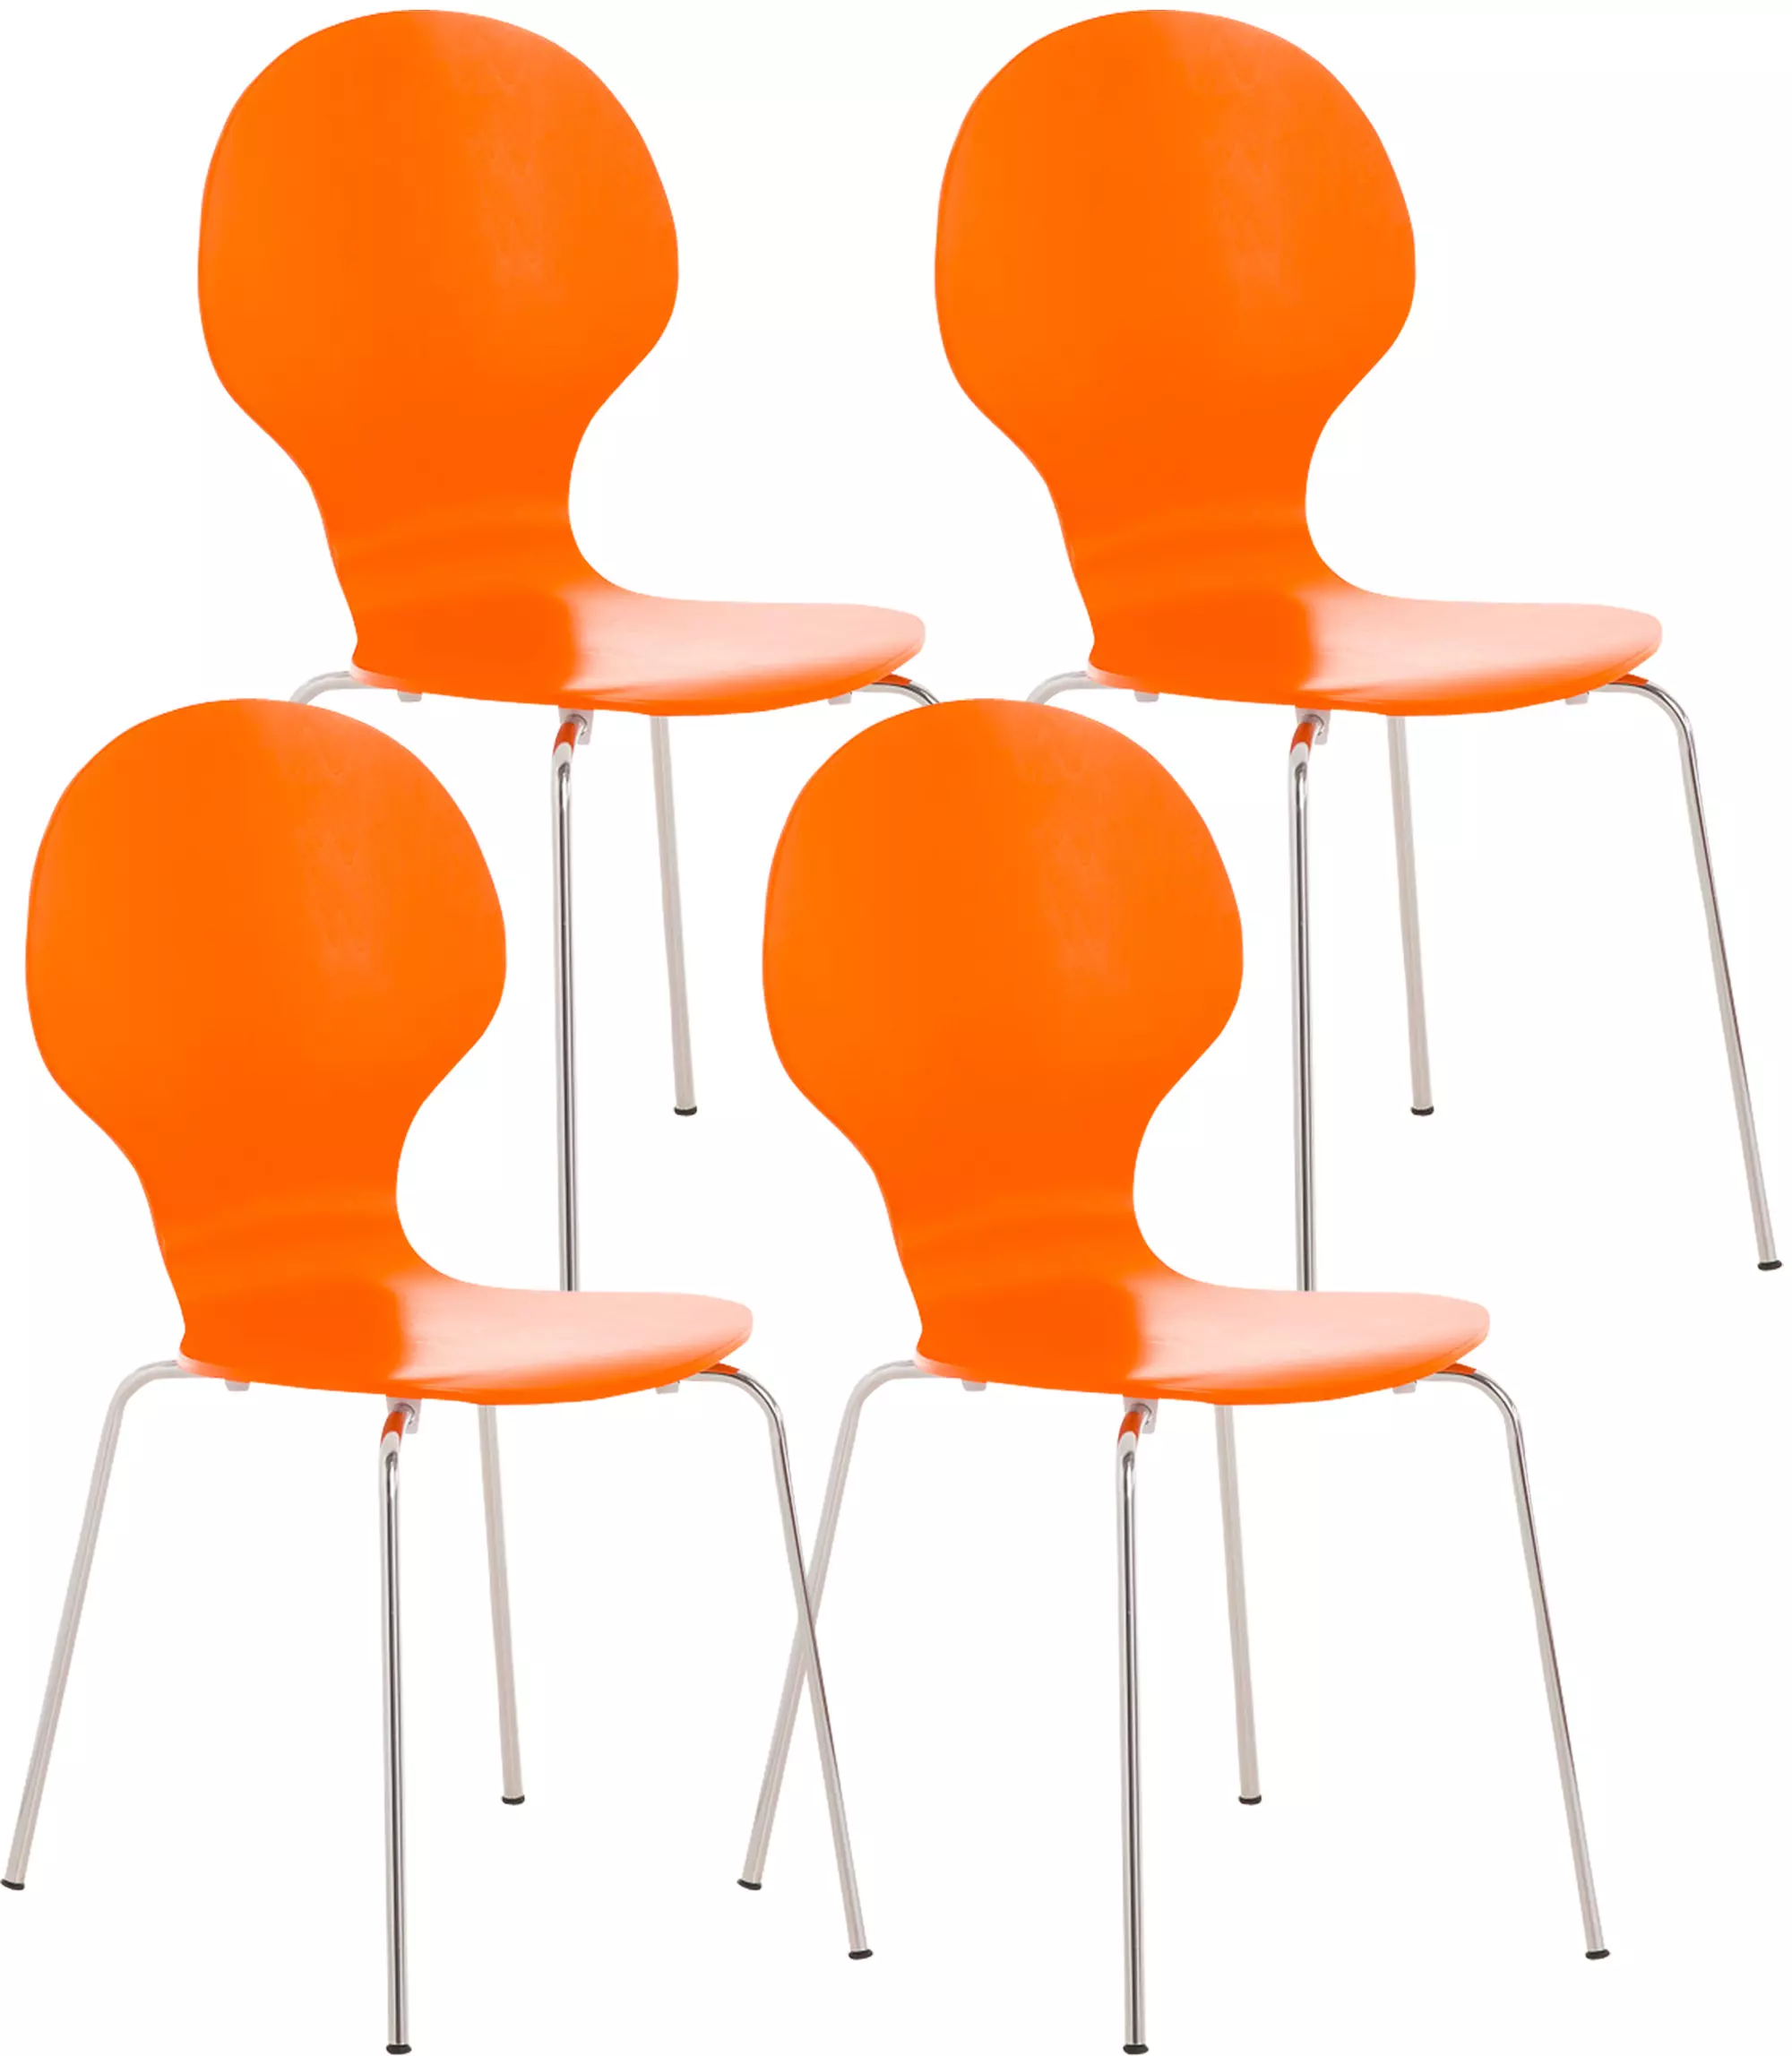 4x Stapelstuhl DIEGO orange